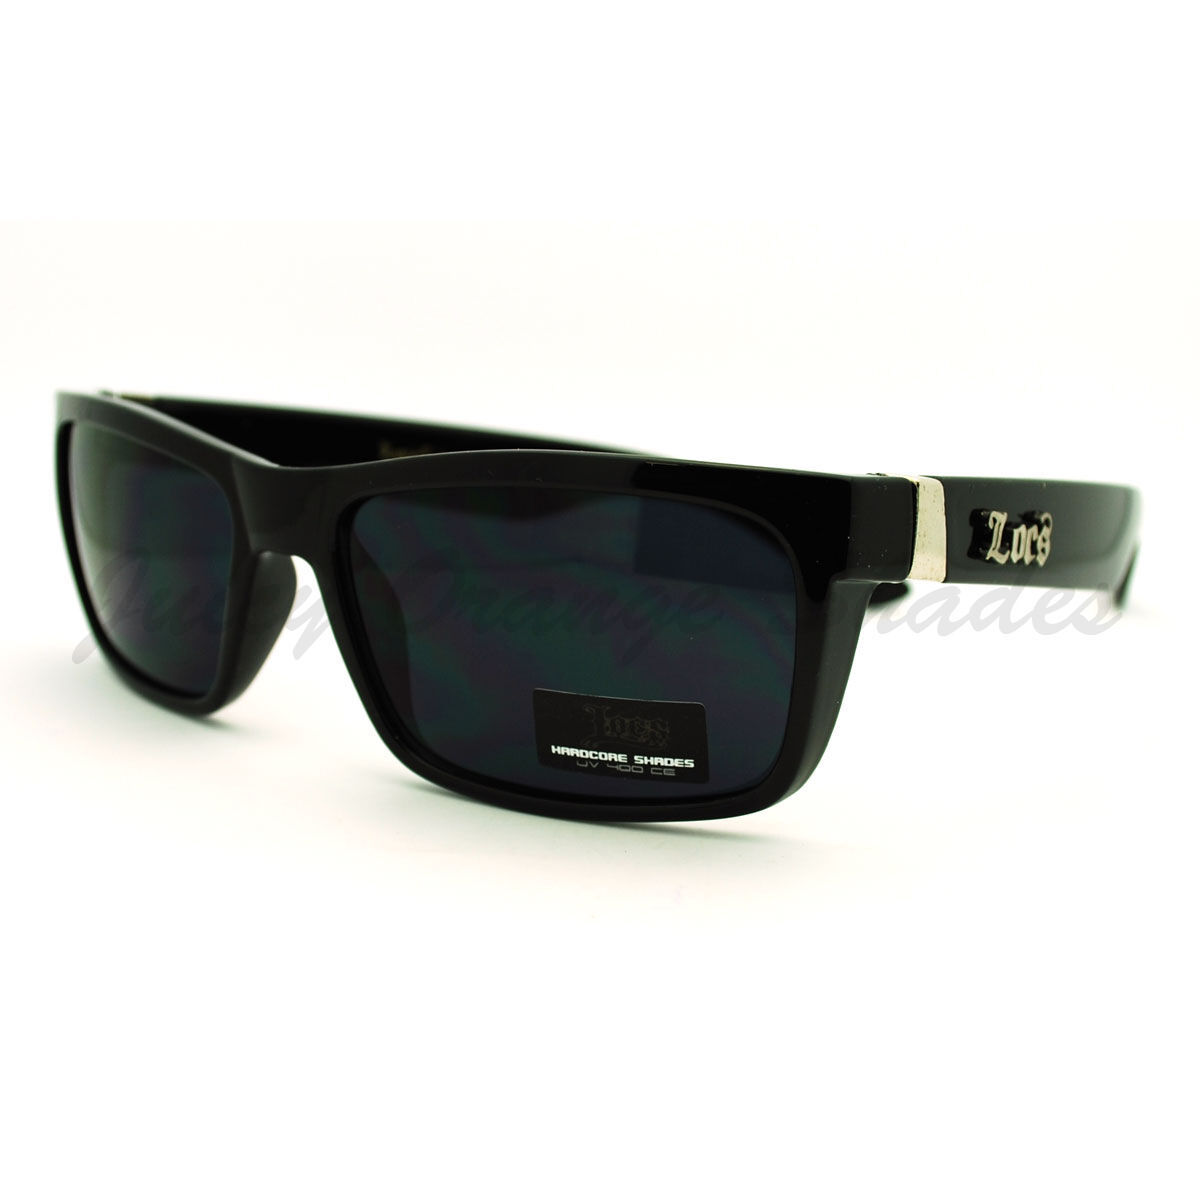 2er Pack Locs 9035 Choppers Sport Glasses Sunglasses Men Women Black White